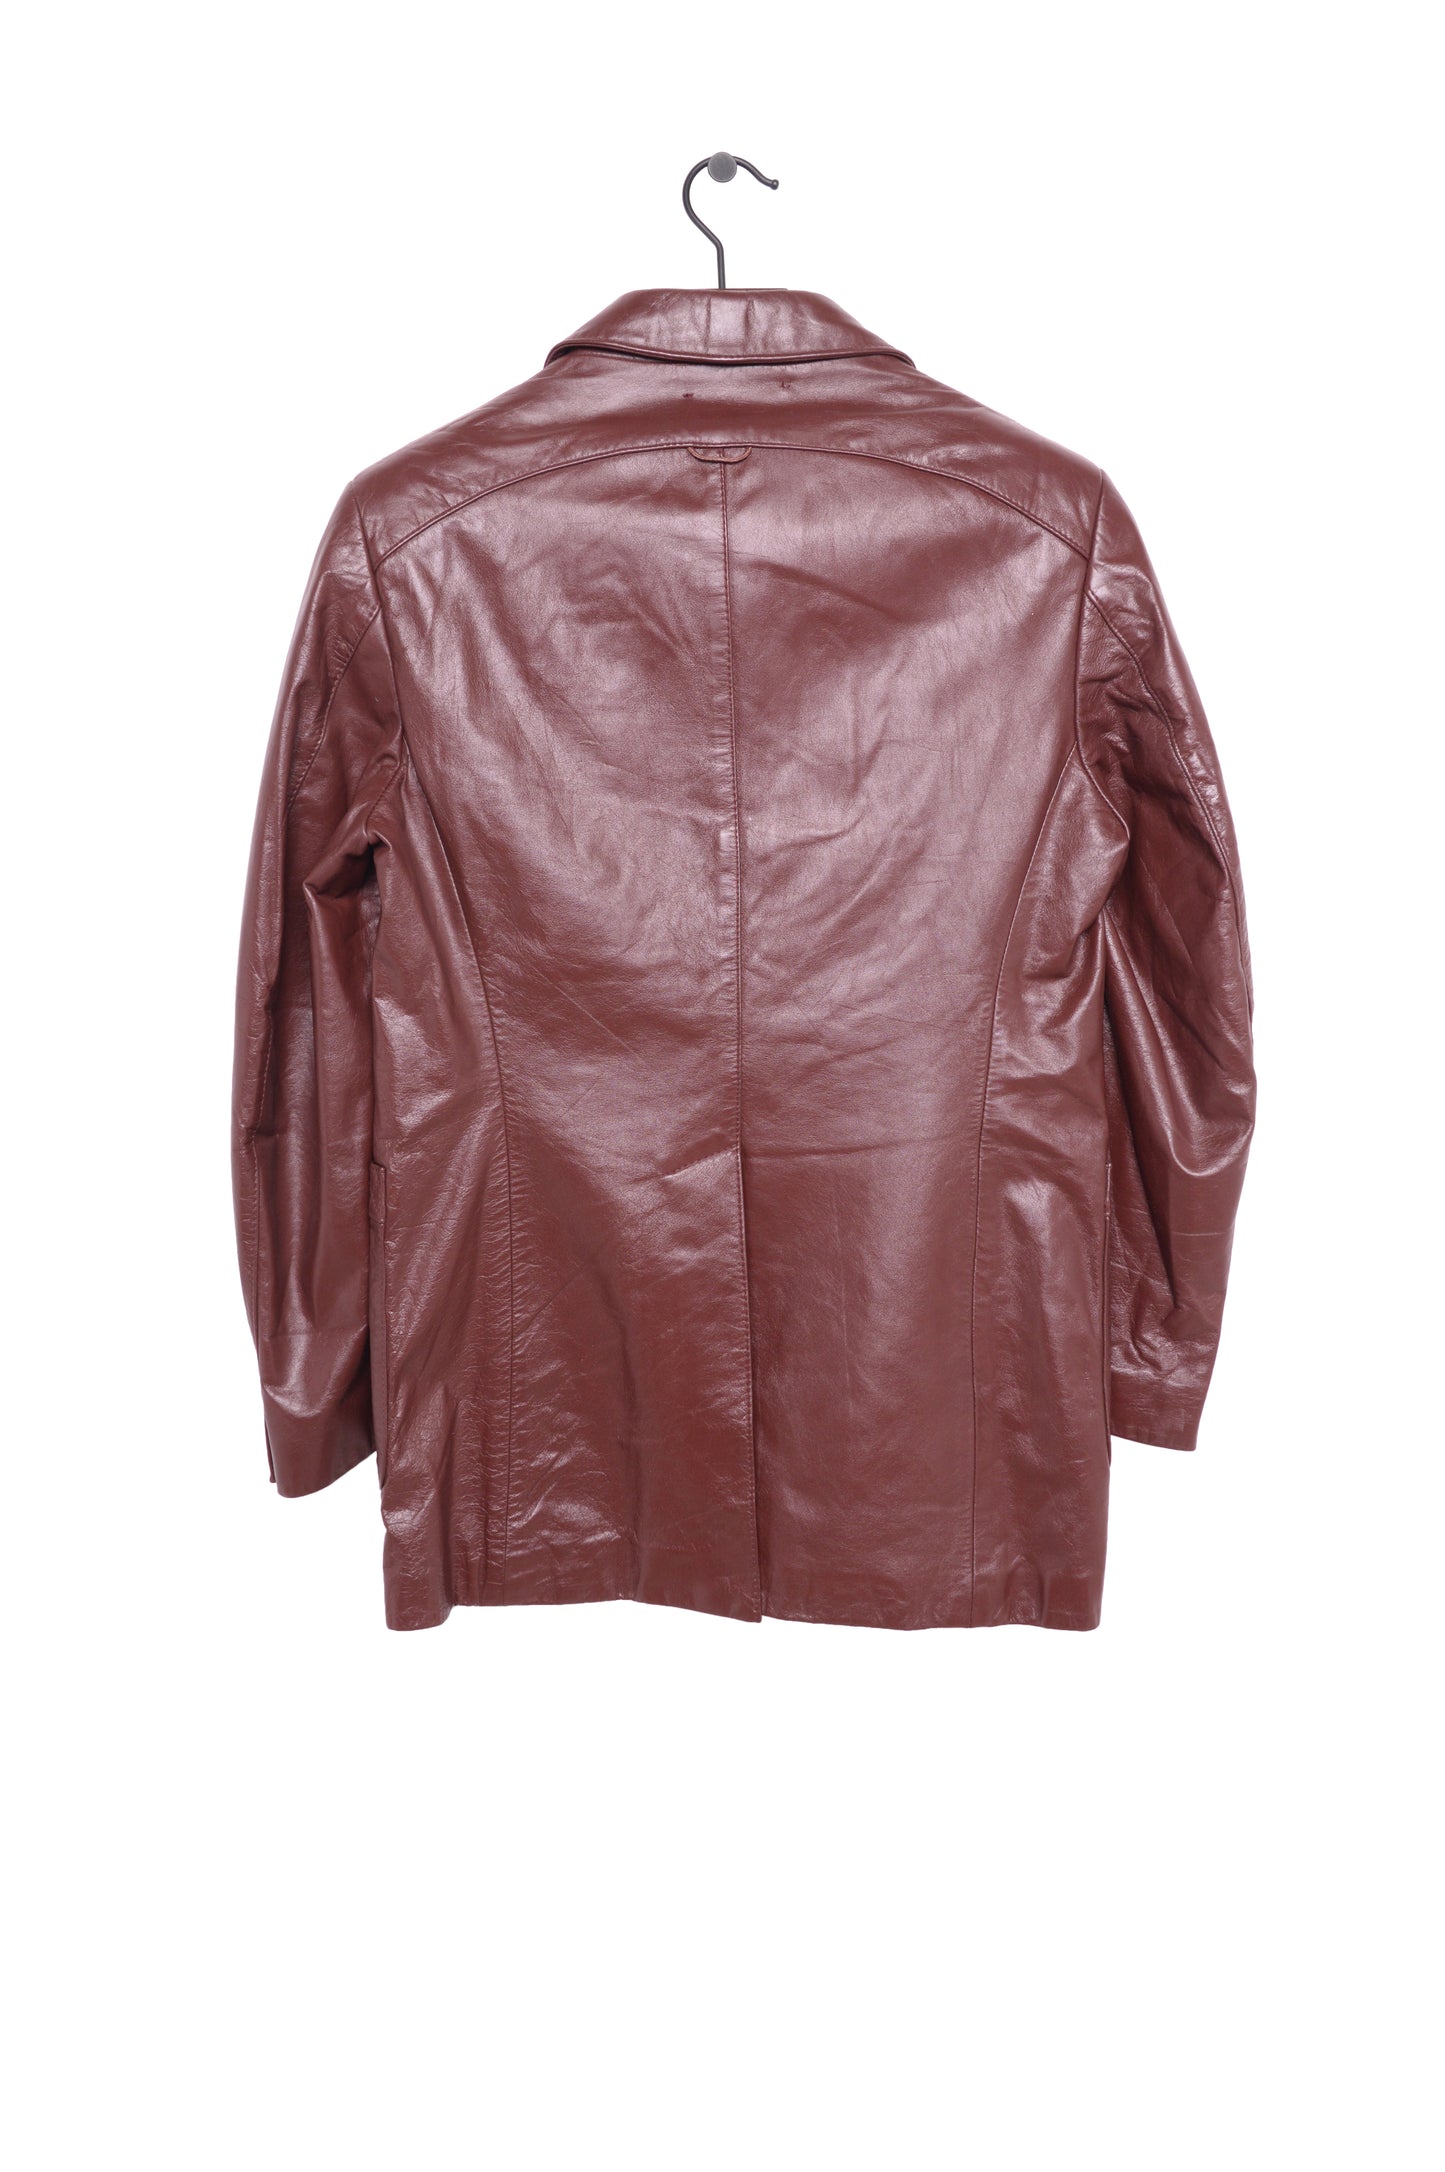 1970s Leather Jacket